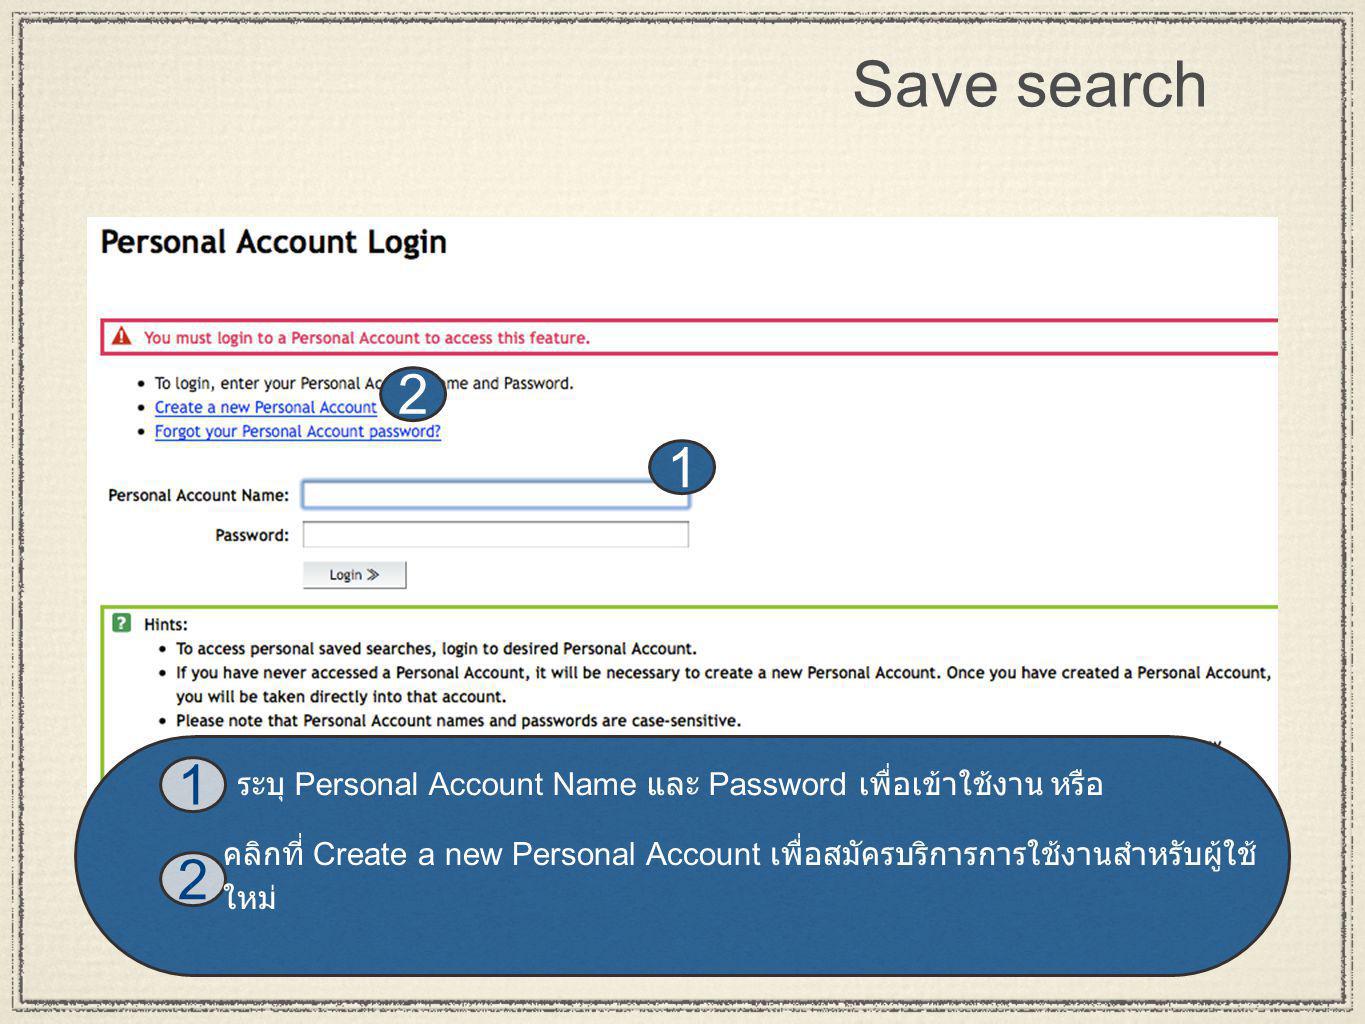 17 Save search คลิกที่ Create a new Personal Account เพื่อสมัครบริการการใช้งานสำหรับผู้ใช้ ใหม่ ระบุ Personal Account Name และ Password เพื่อเข้าใช้งาน หรือ